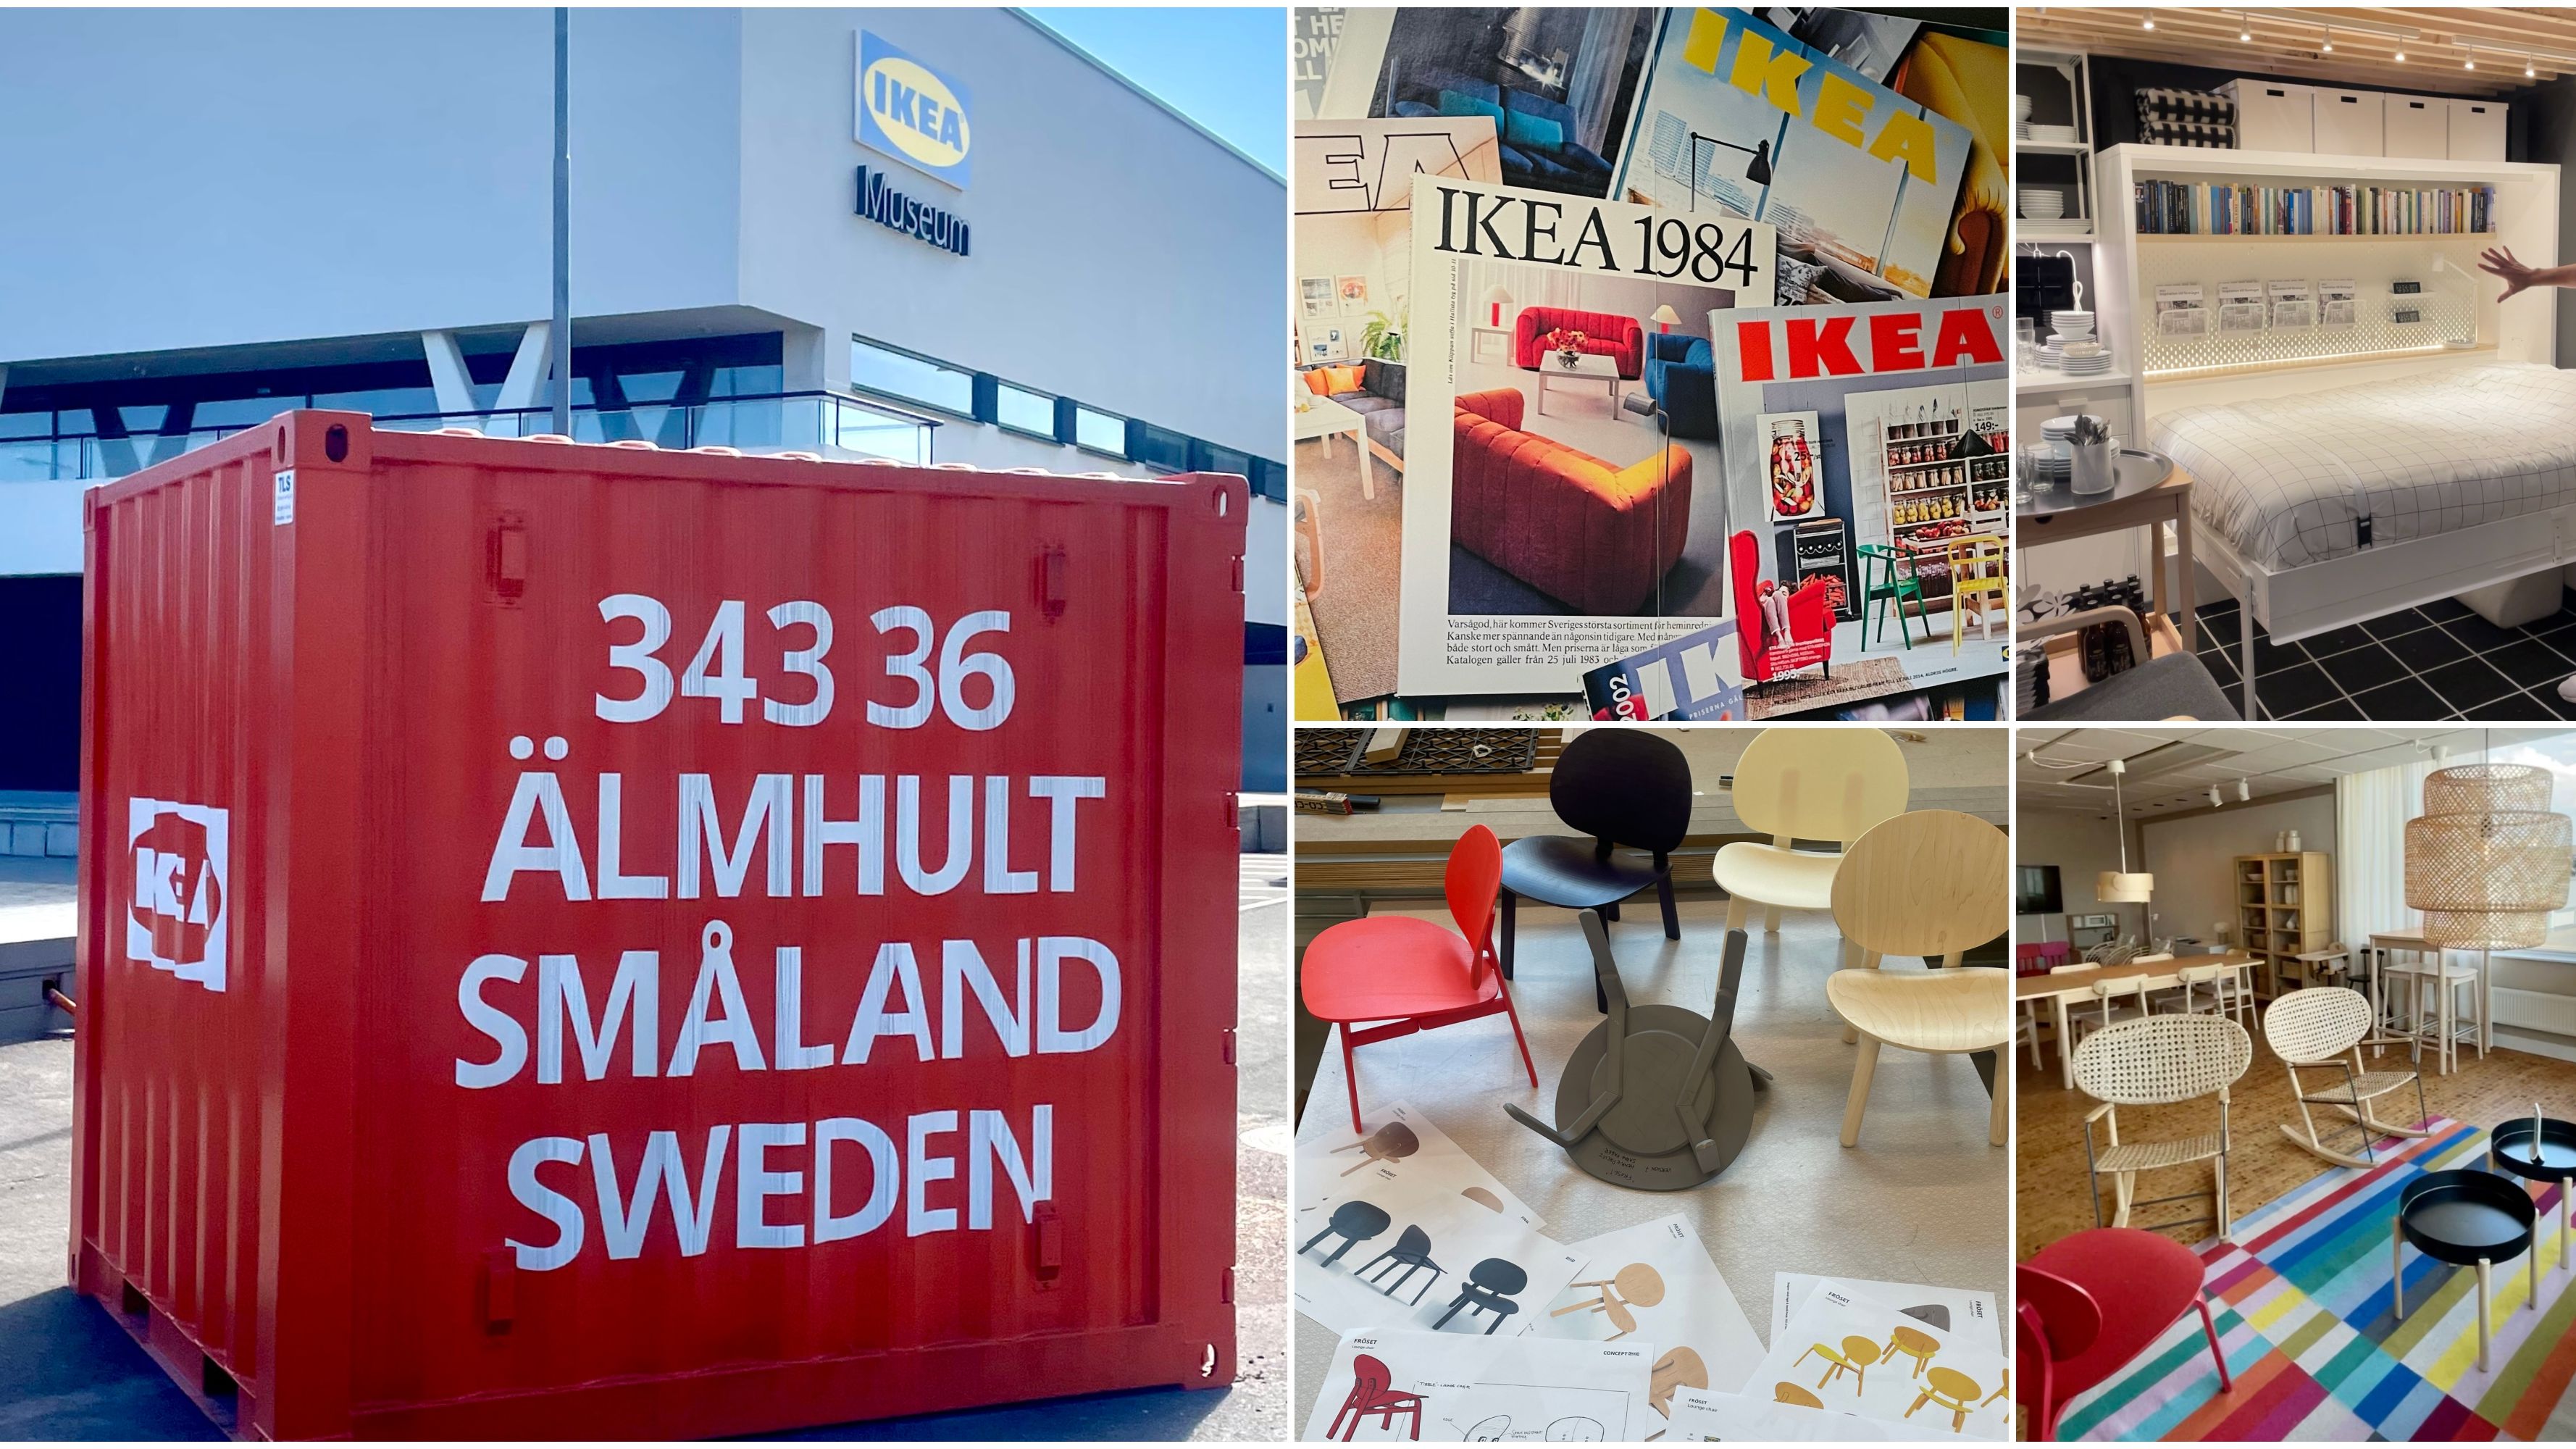 Los favoritos de El Mueble del nuevo catálogo de Ikea